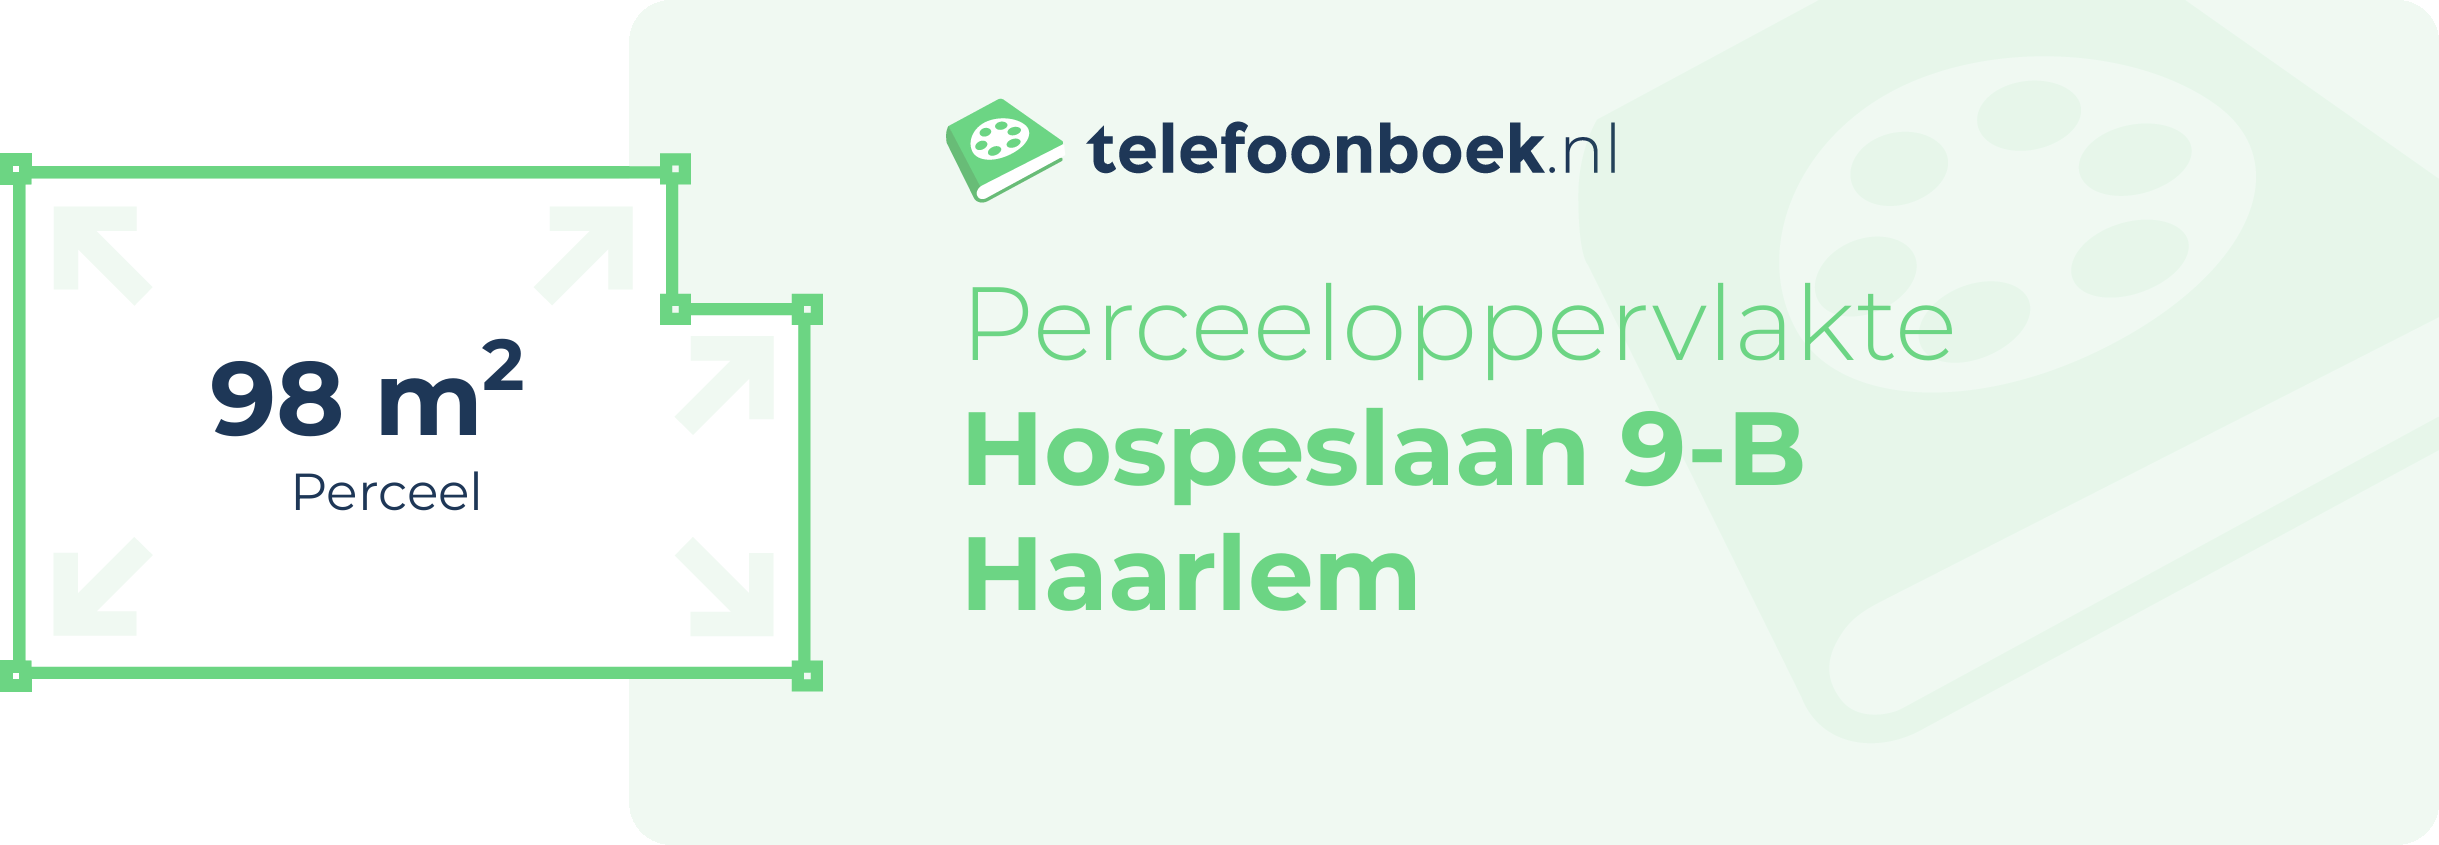 Perceeloppervlakte Hospeslaan 9-B Haarlem